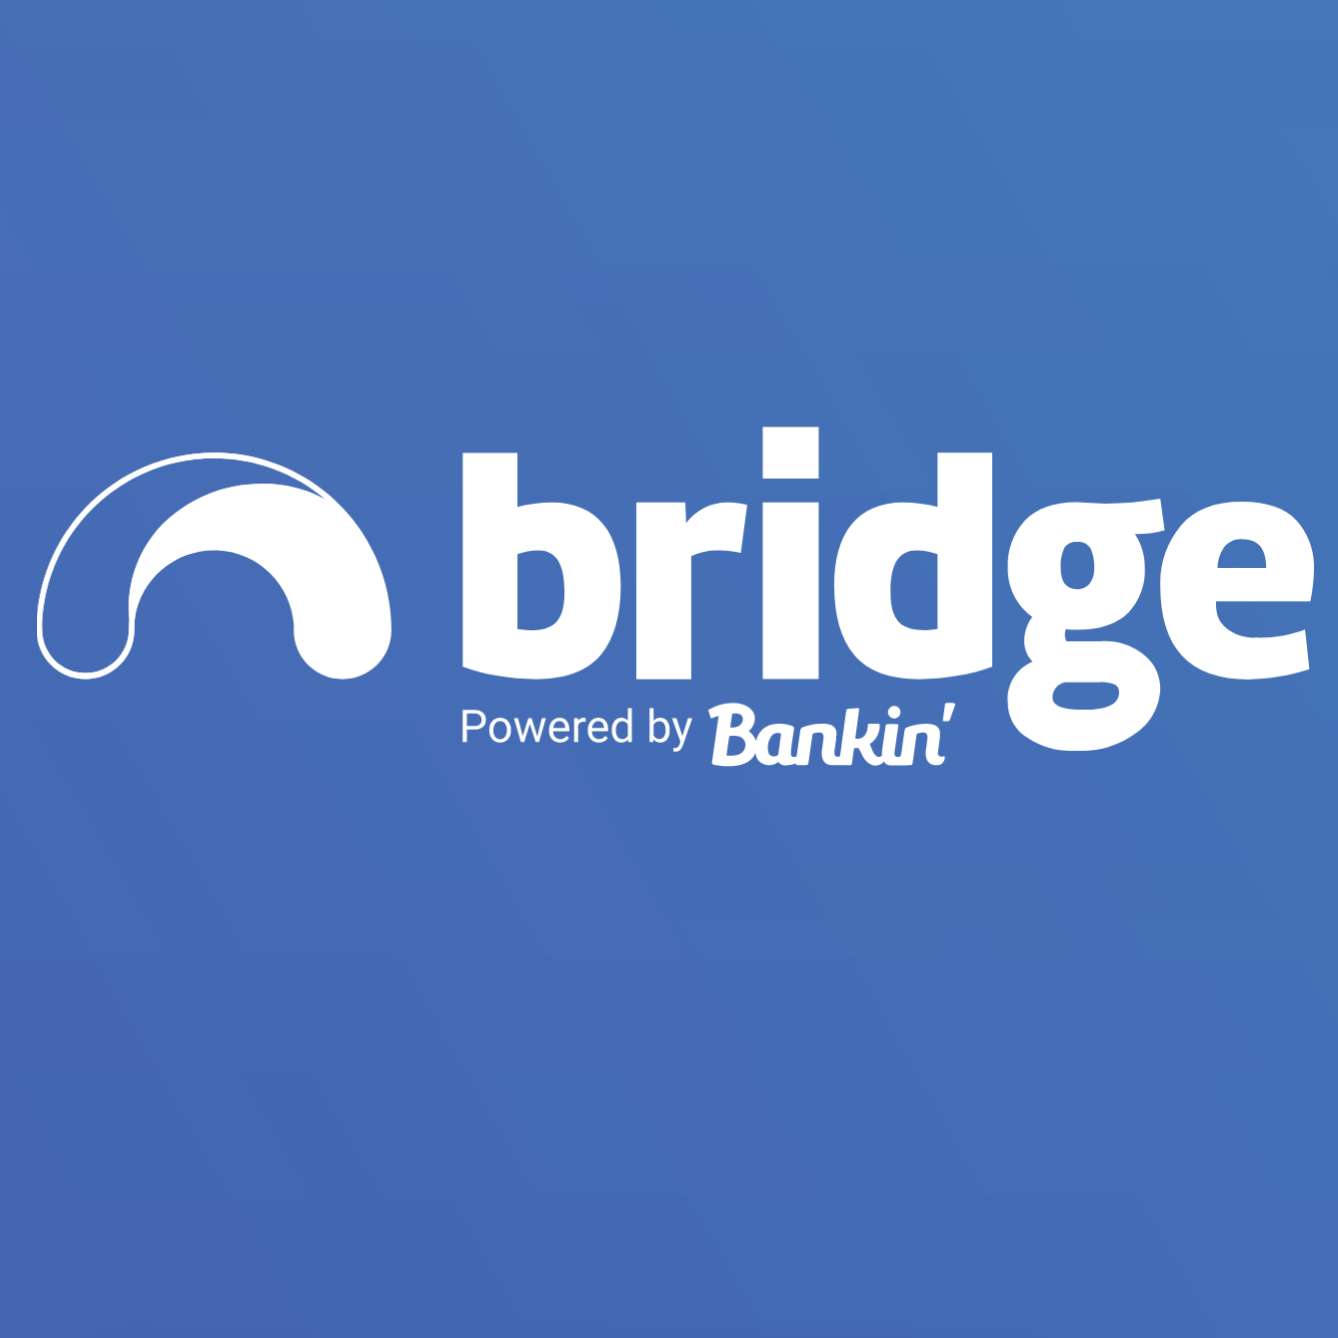 Bridge by Bankin' logo